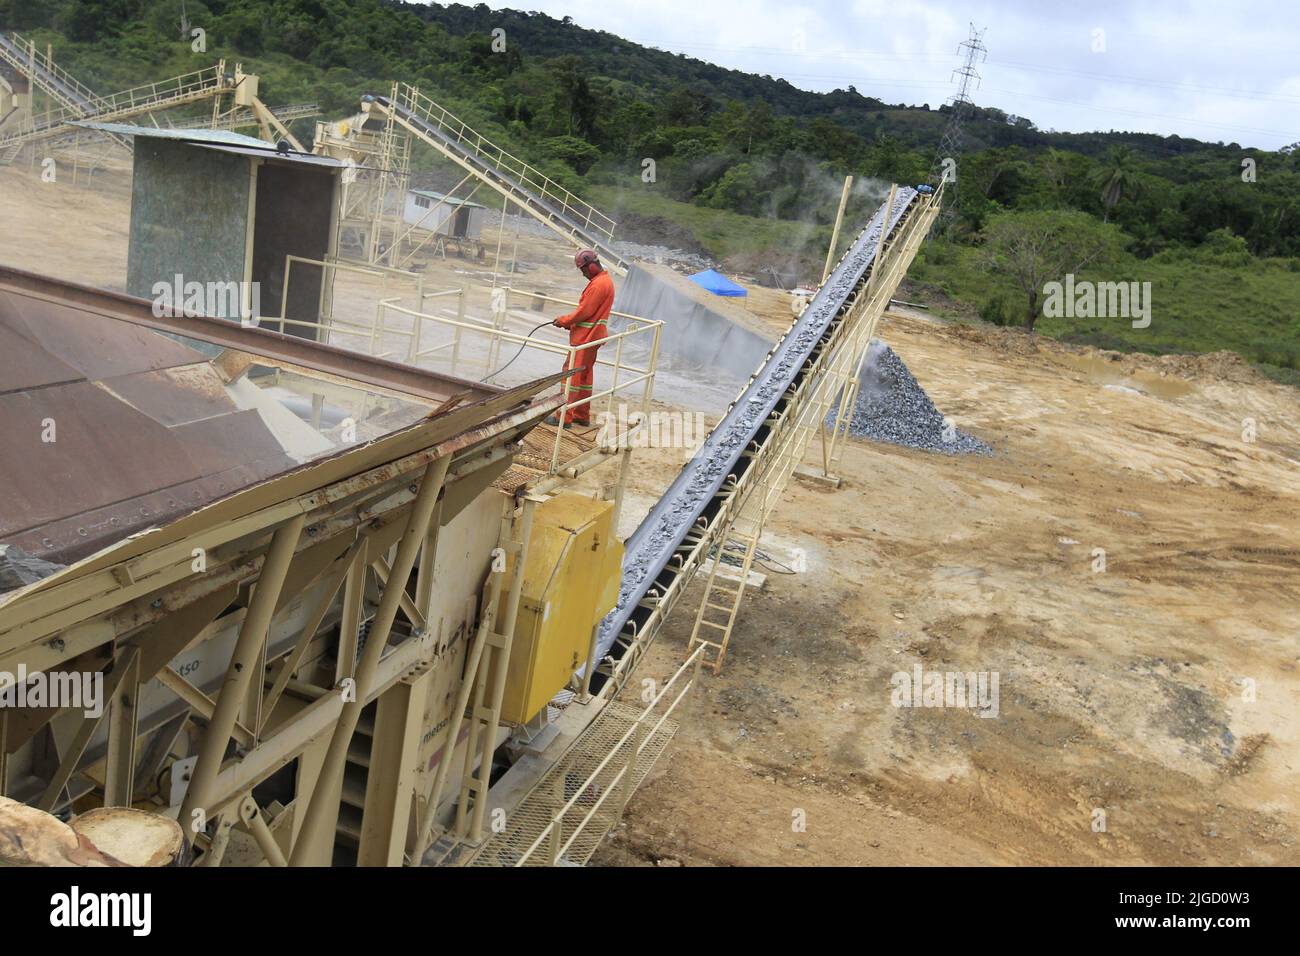 ilheus, bahia, brésil - 23 mai 2022 : machine de broyage de pierres pour la production de gravier sur un chantier de construction dans la ville d'Ilheus. Banque D'Images